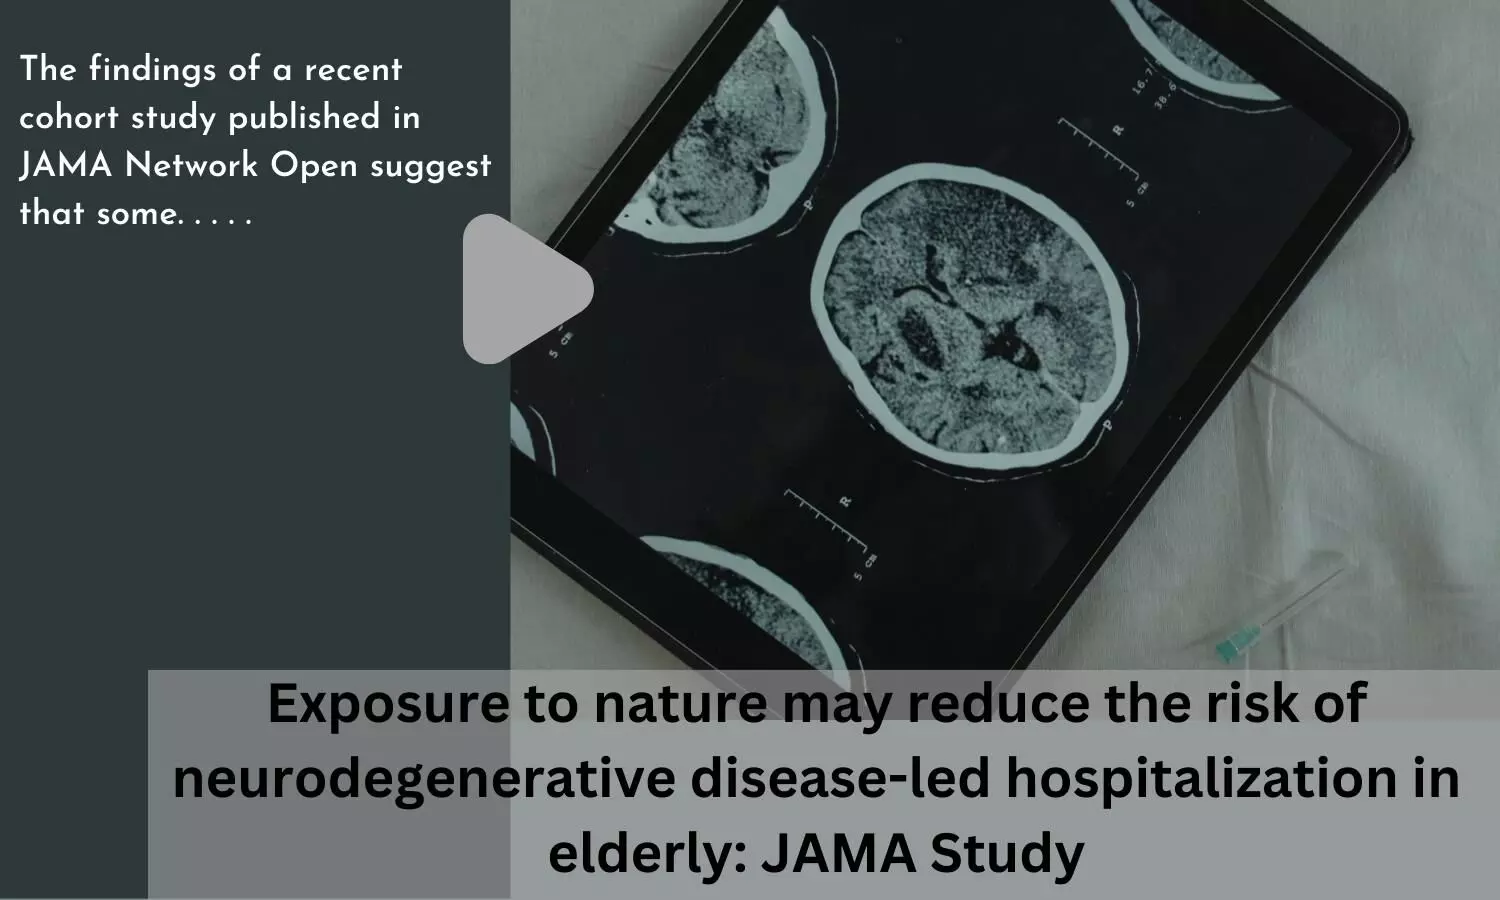 Exposure to nature may reduce the risk of neurodegenerative disease-led hospitalization in elderly: JAMA Study